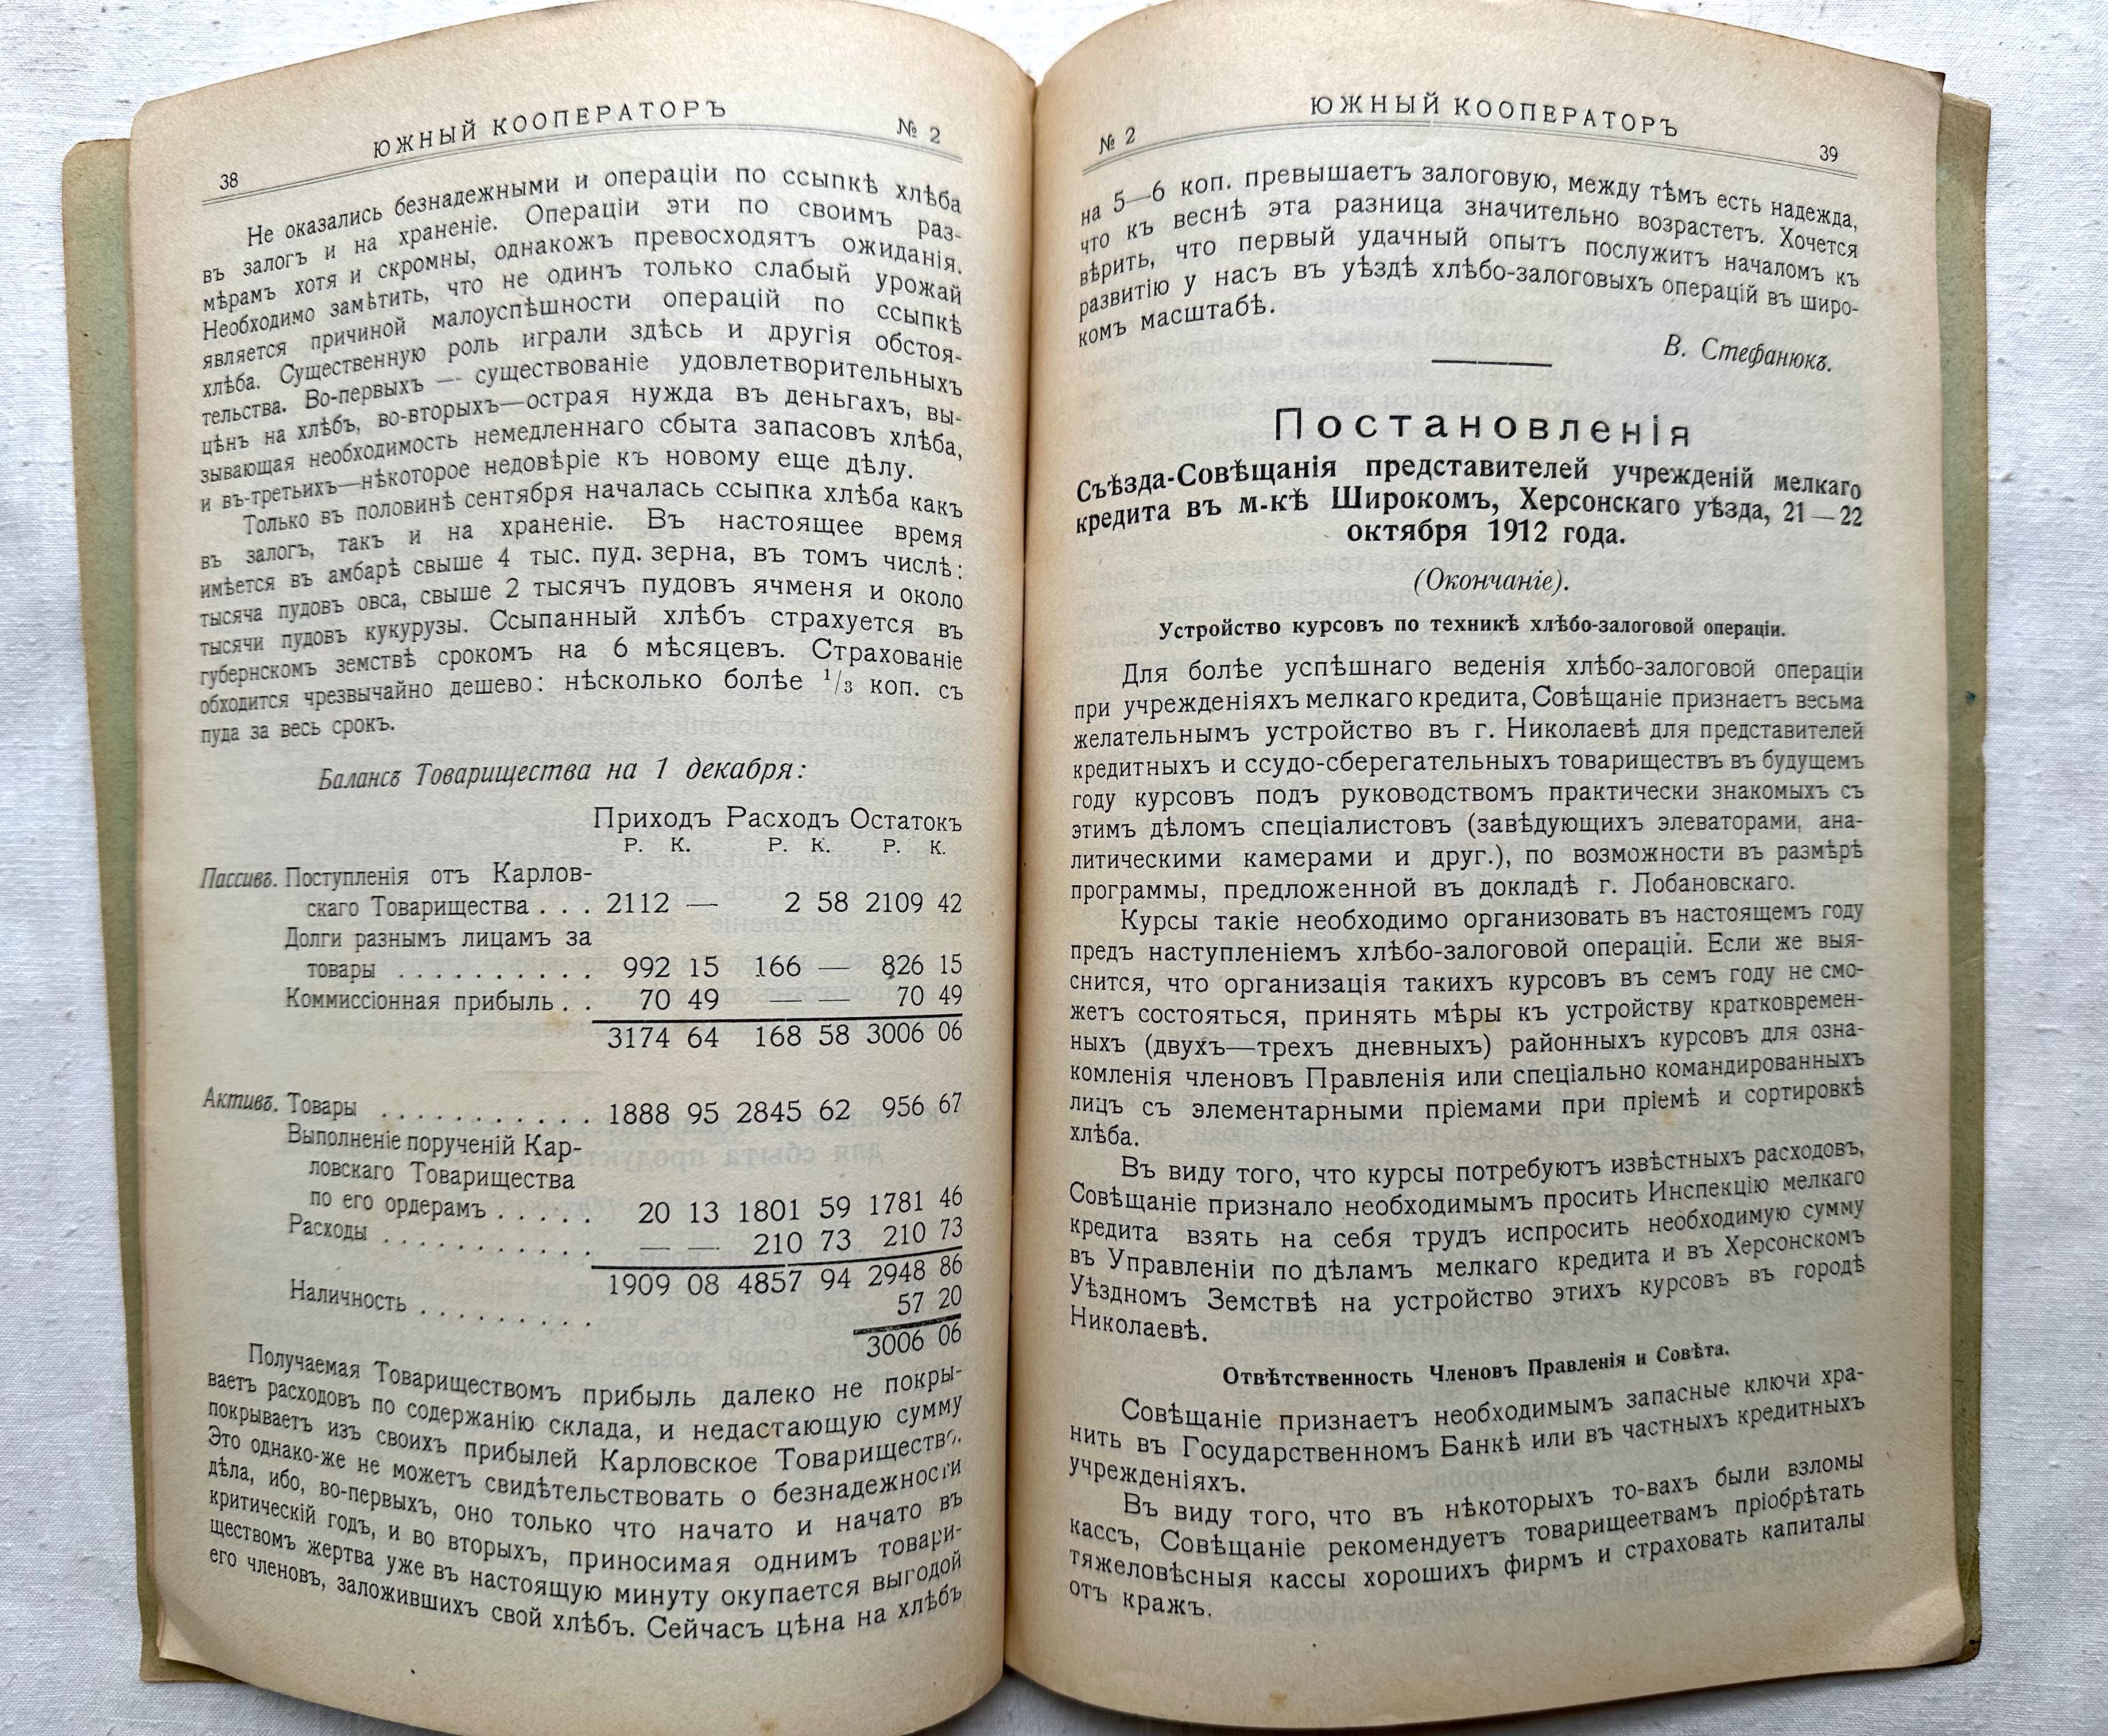 «1913 г! Южный Кооператор. Двухнедельный журнал»